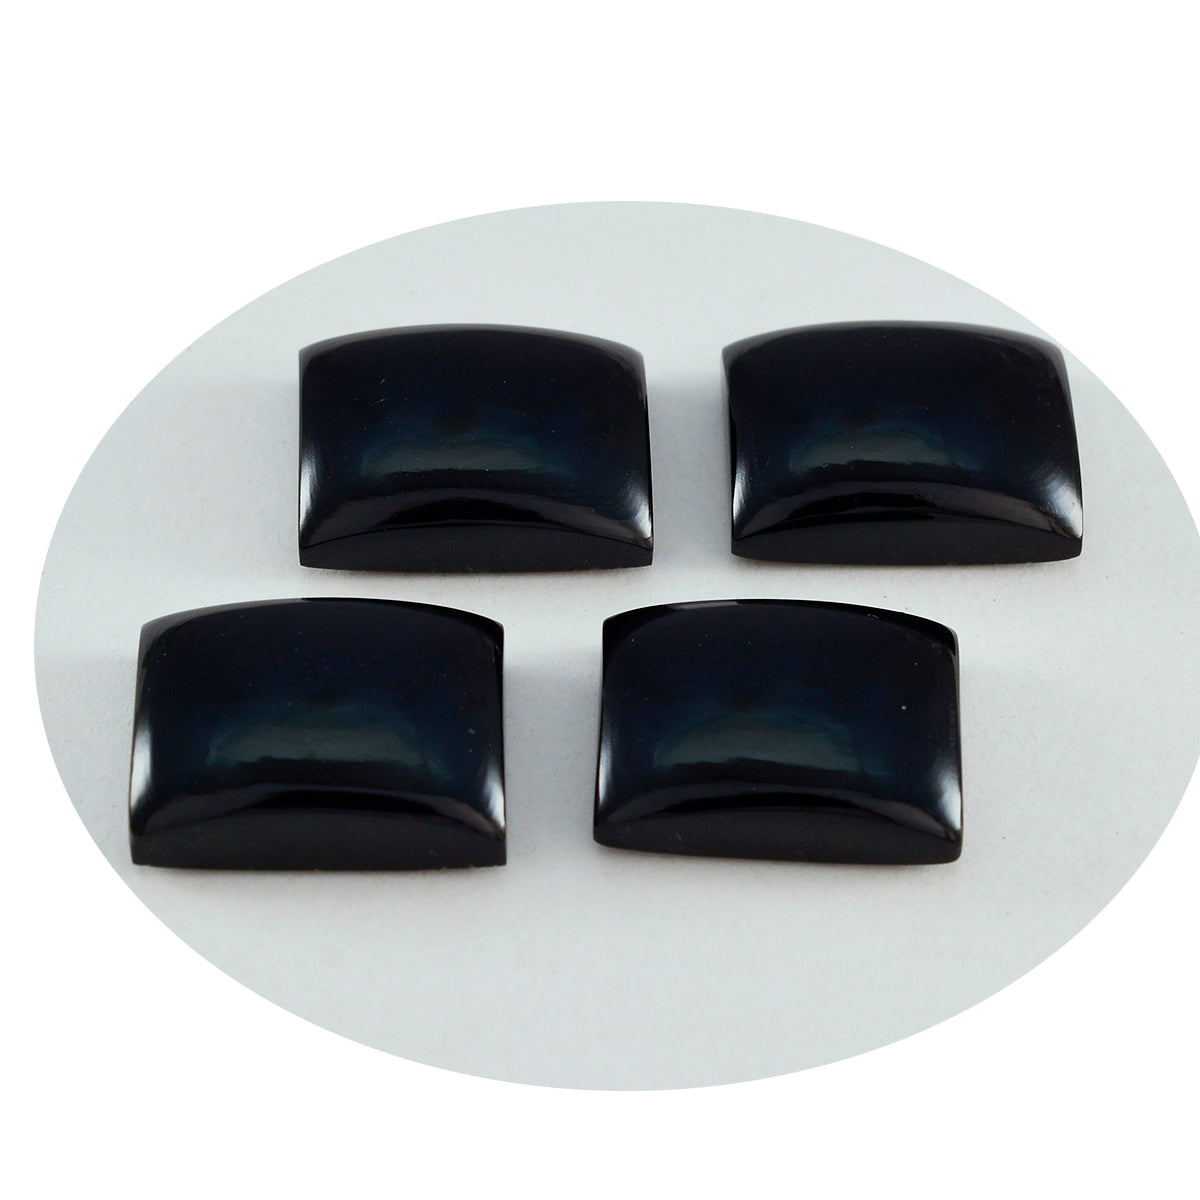 Riyogems 1PC Black Onyx Cabochon 12x16 mm Octagon Shape great Quality Gemstone